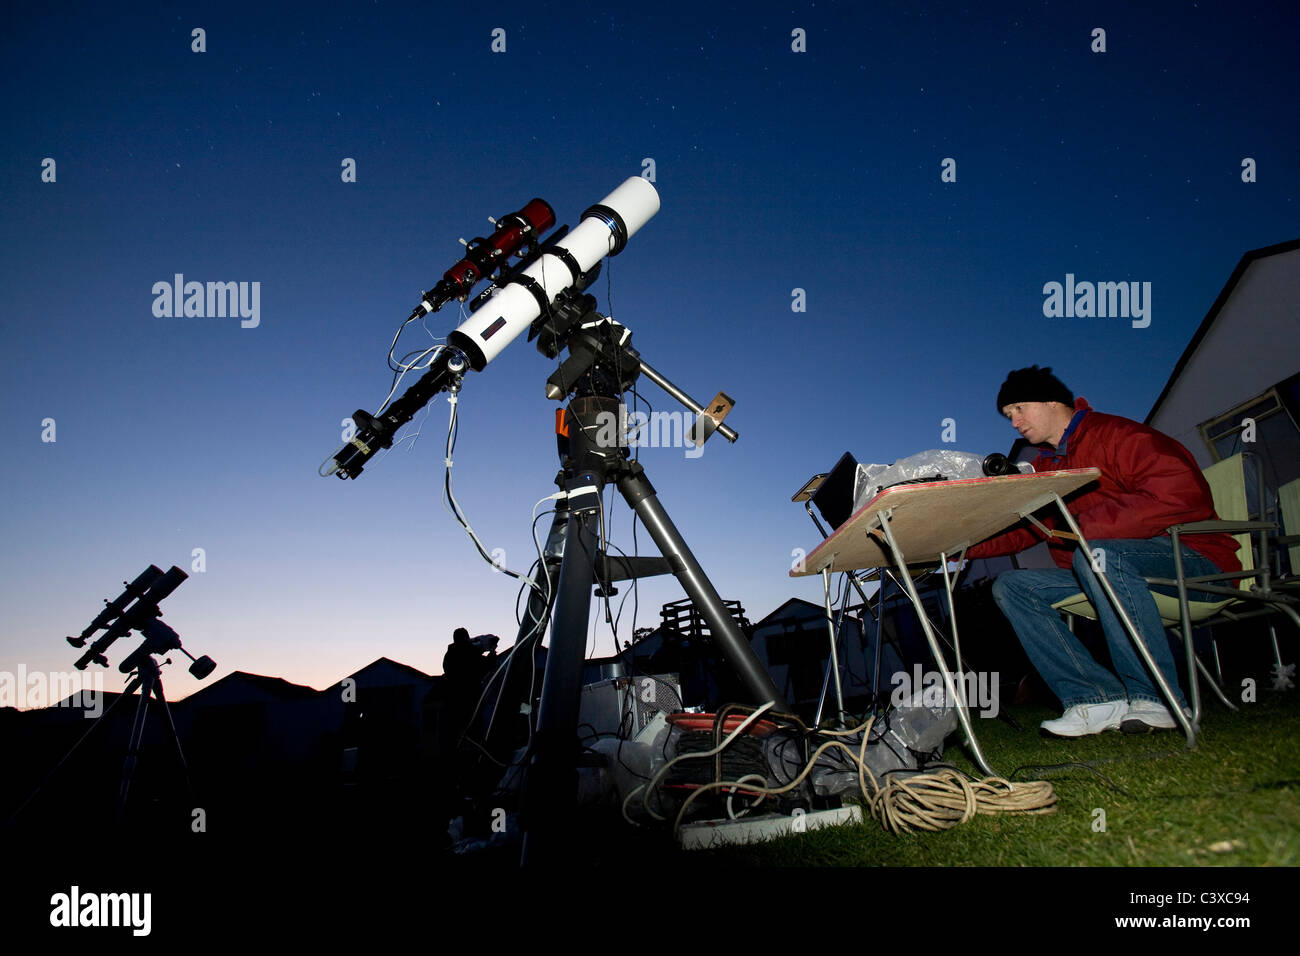 L'astronomie, de l'Astronome, fête des étoiles, Brightstone, Centre de Vacances, Brightstone, île de Wight, Angleterre, Royaume-Uni, Banque D'Images